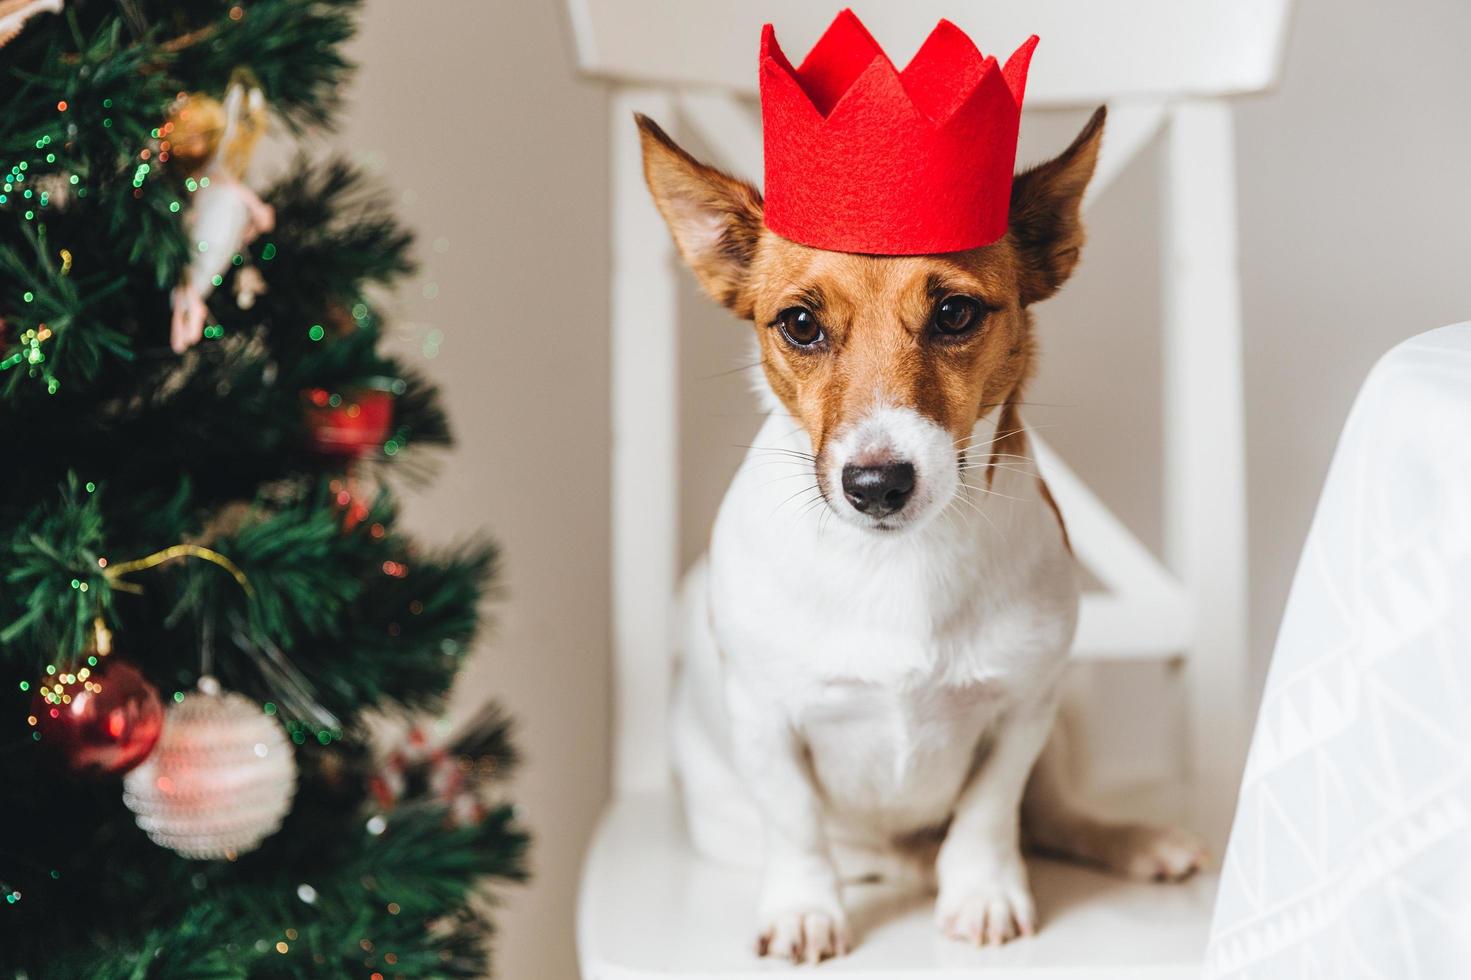 bild von jack russell, kleiner hund in roter papierkrone, sitzt neben geschmücktem weihnachtsbaum, hebt die ohren, wartet auf etwas leckeres oder schmackhaftes von menschen. lustiges haustier, das symbol des neuen jahres ist. foto